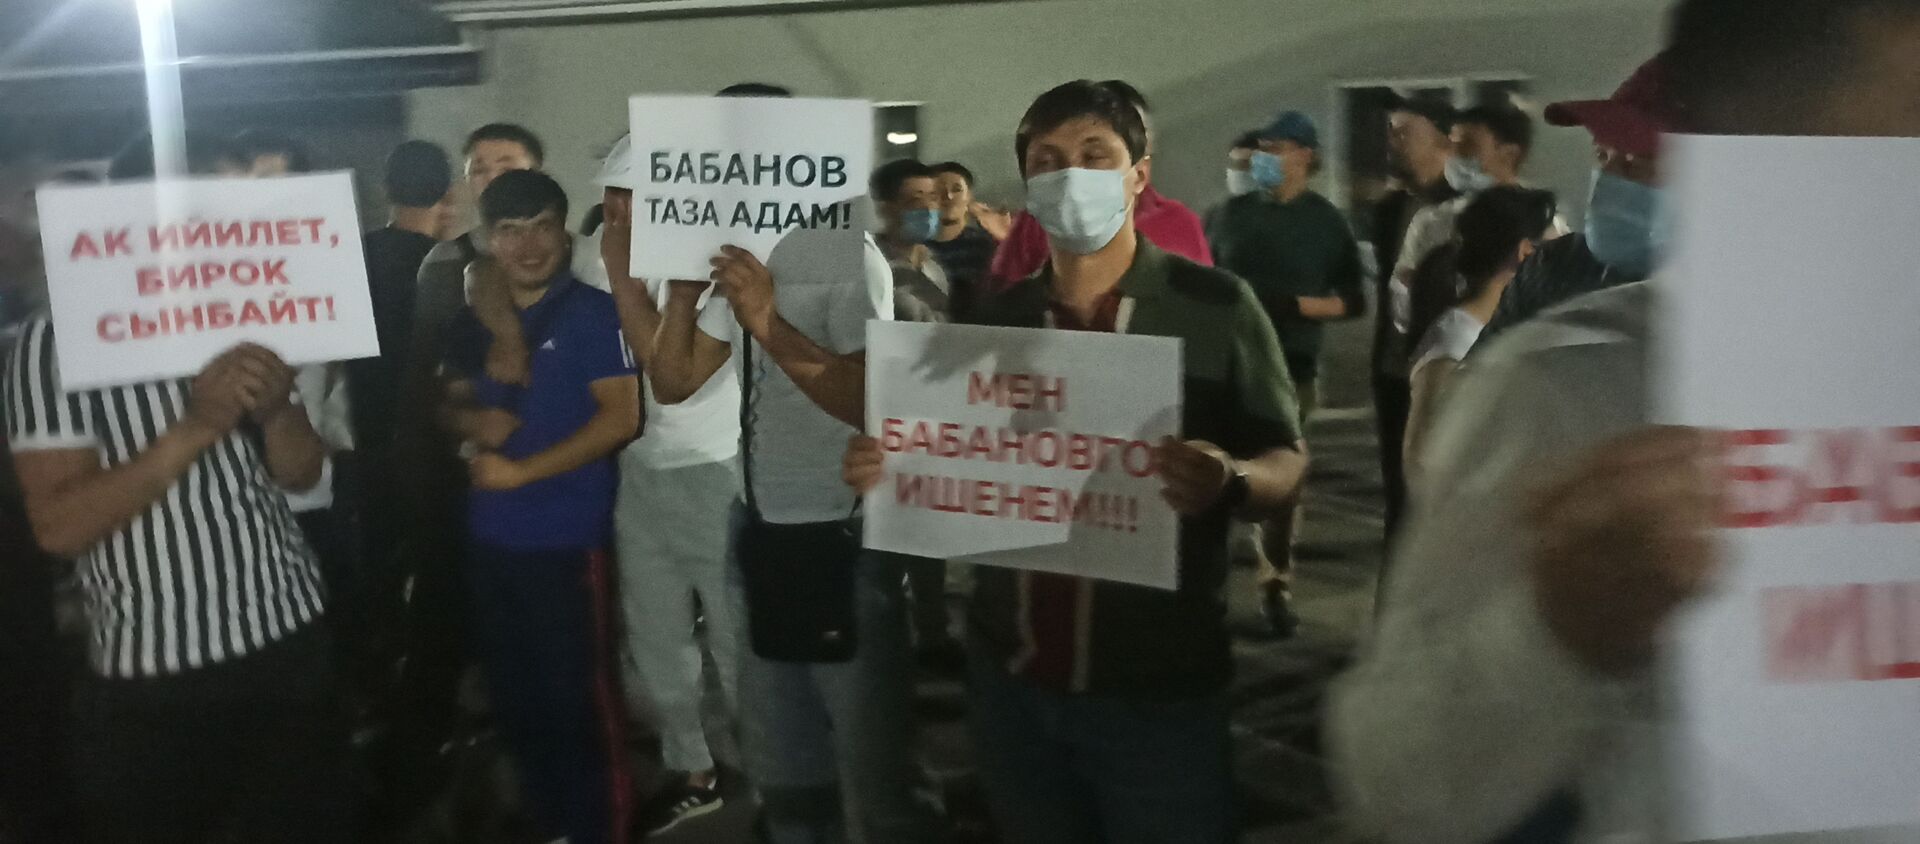 Митинг сторонников экс-премьера и бывших депутатов в Бишкеке - Sputnik Кыргызстан, 1920, 01.06.2021